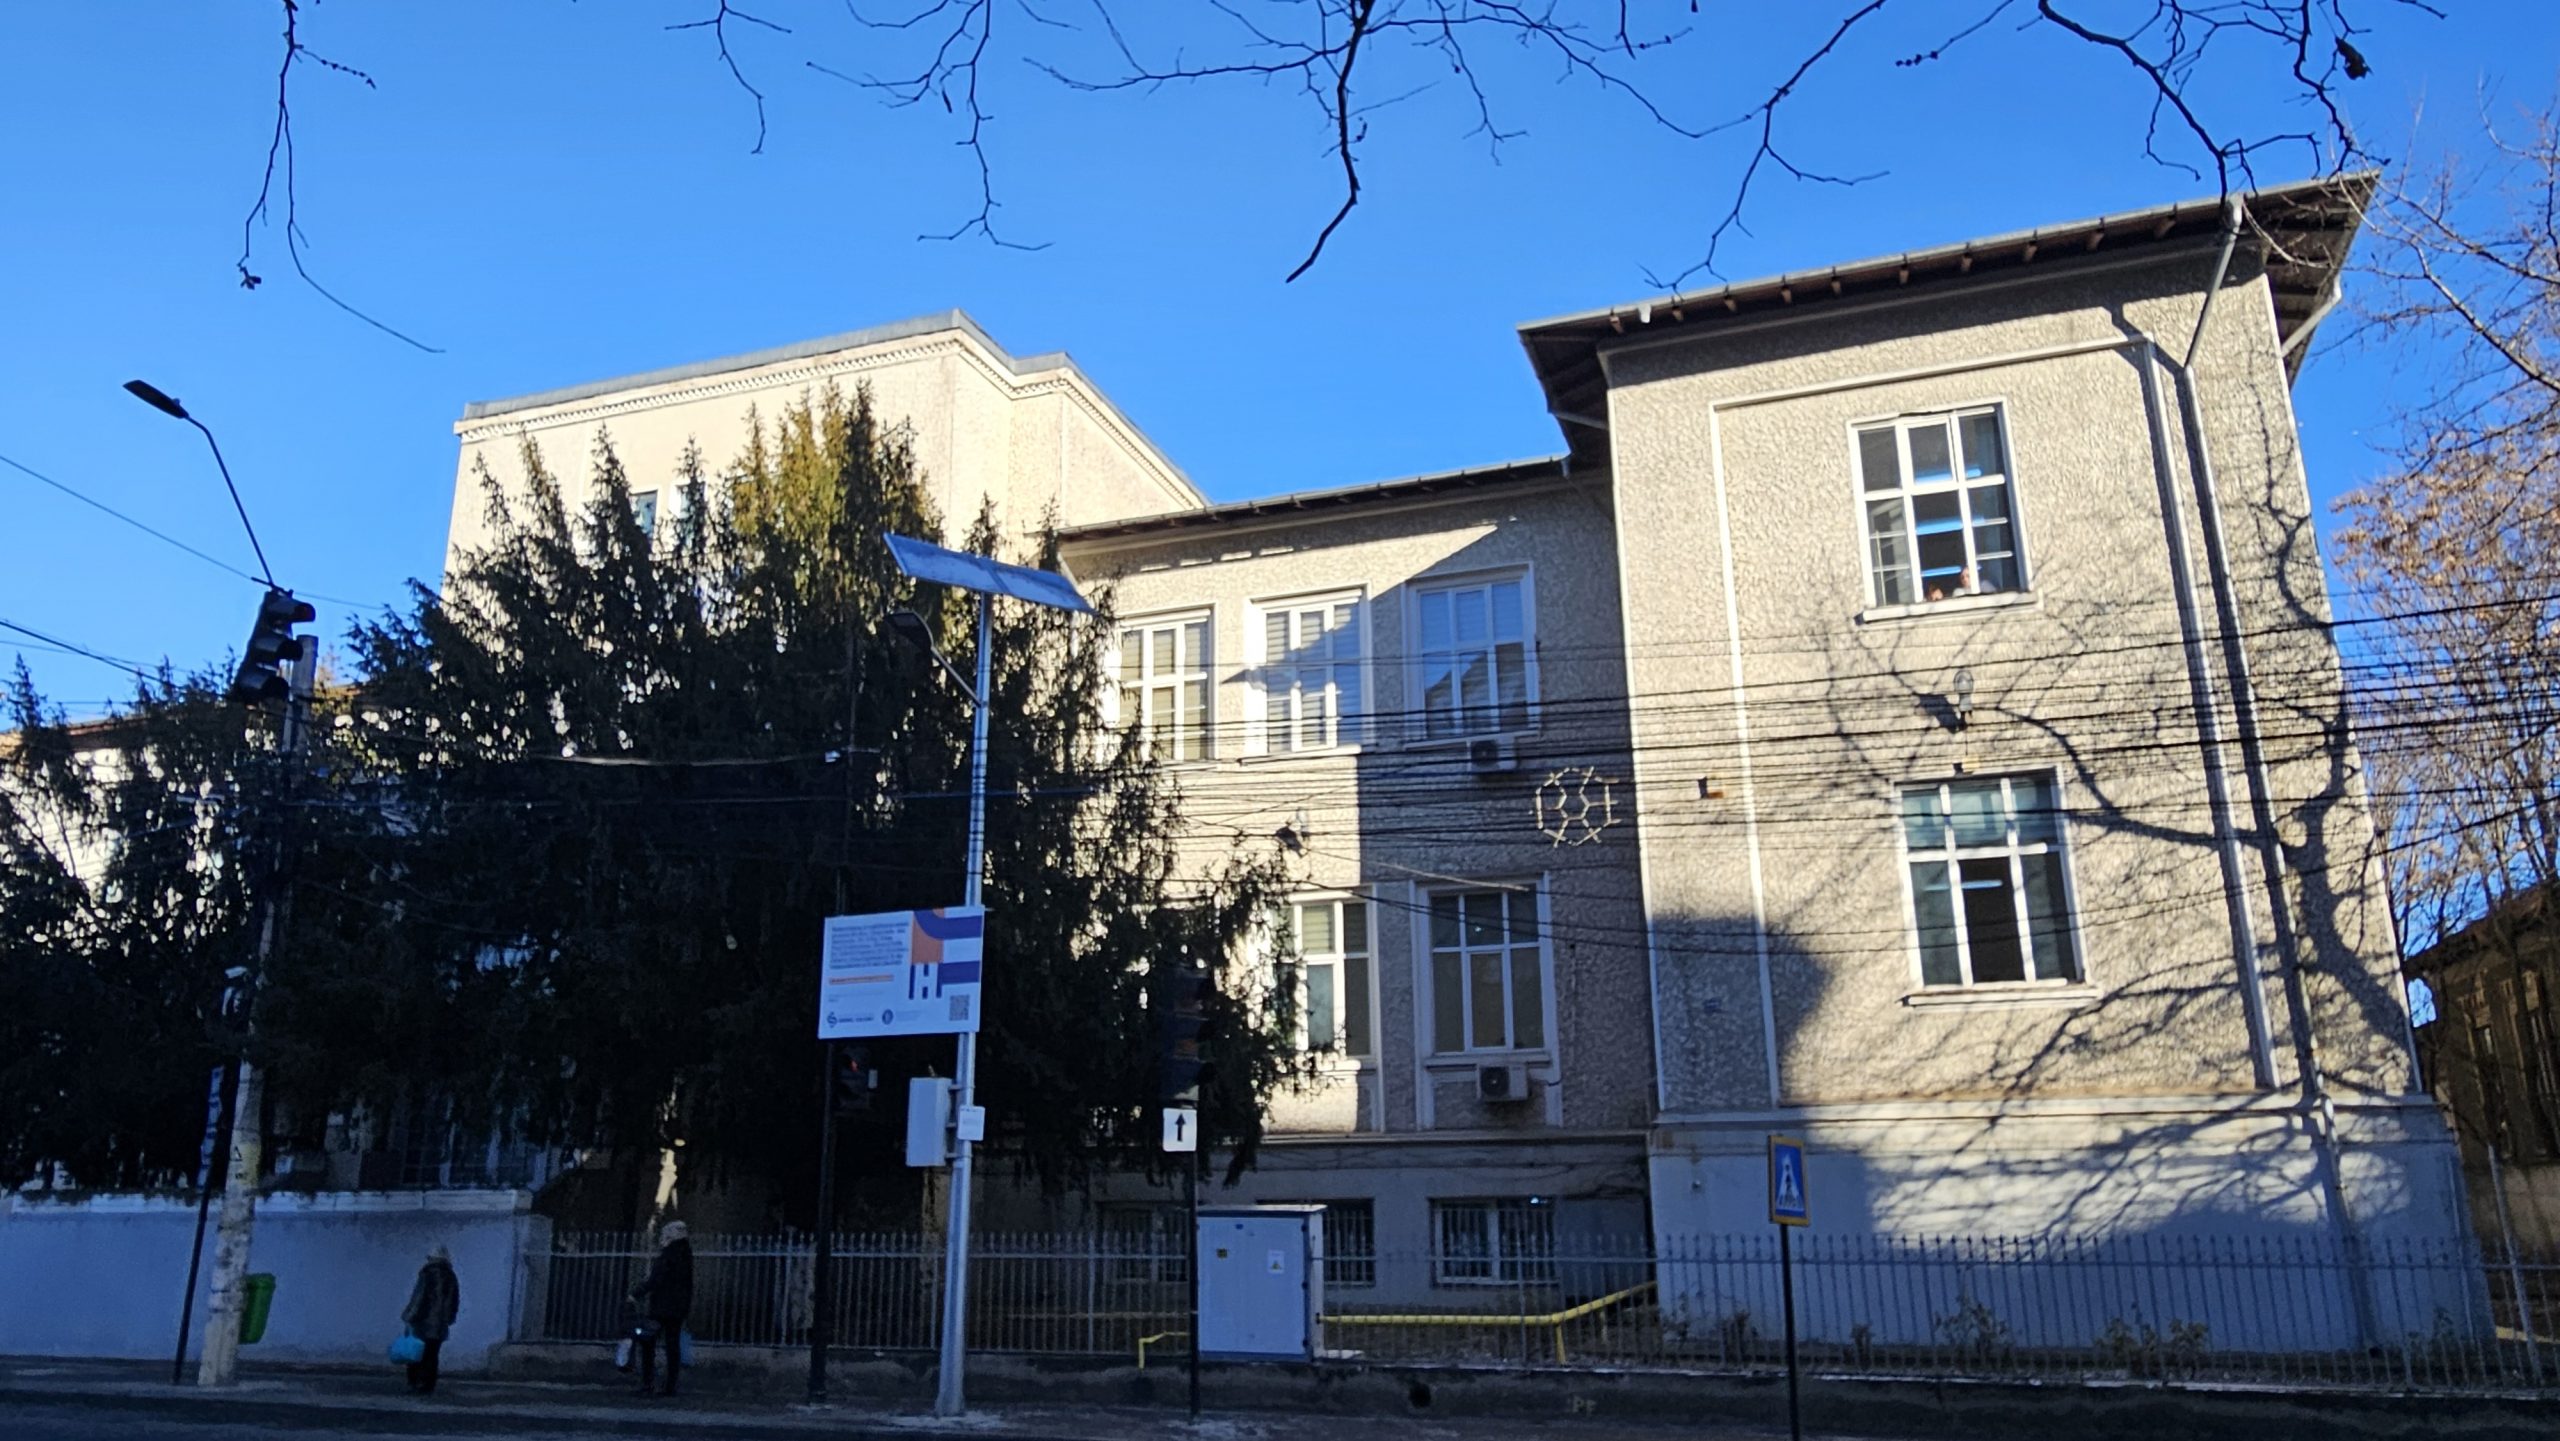 Colegiul Economic „Ion Ghica” din Târgoviște, o școală cu o vechime de peste 100 de ani, va intra într-un amplu proces de modernizare, consolidare și reabilitare energetică, grație unei finanțări nerambursabile obținute de administrația publică locală.